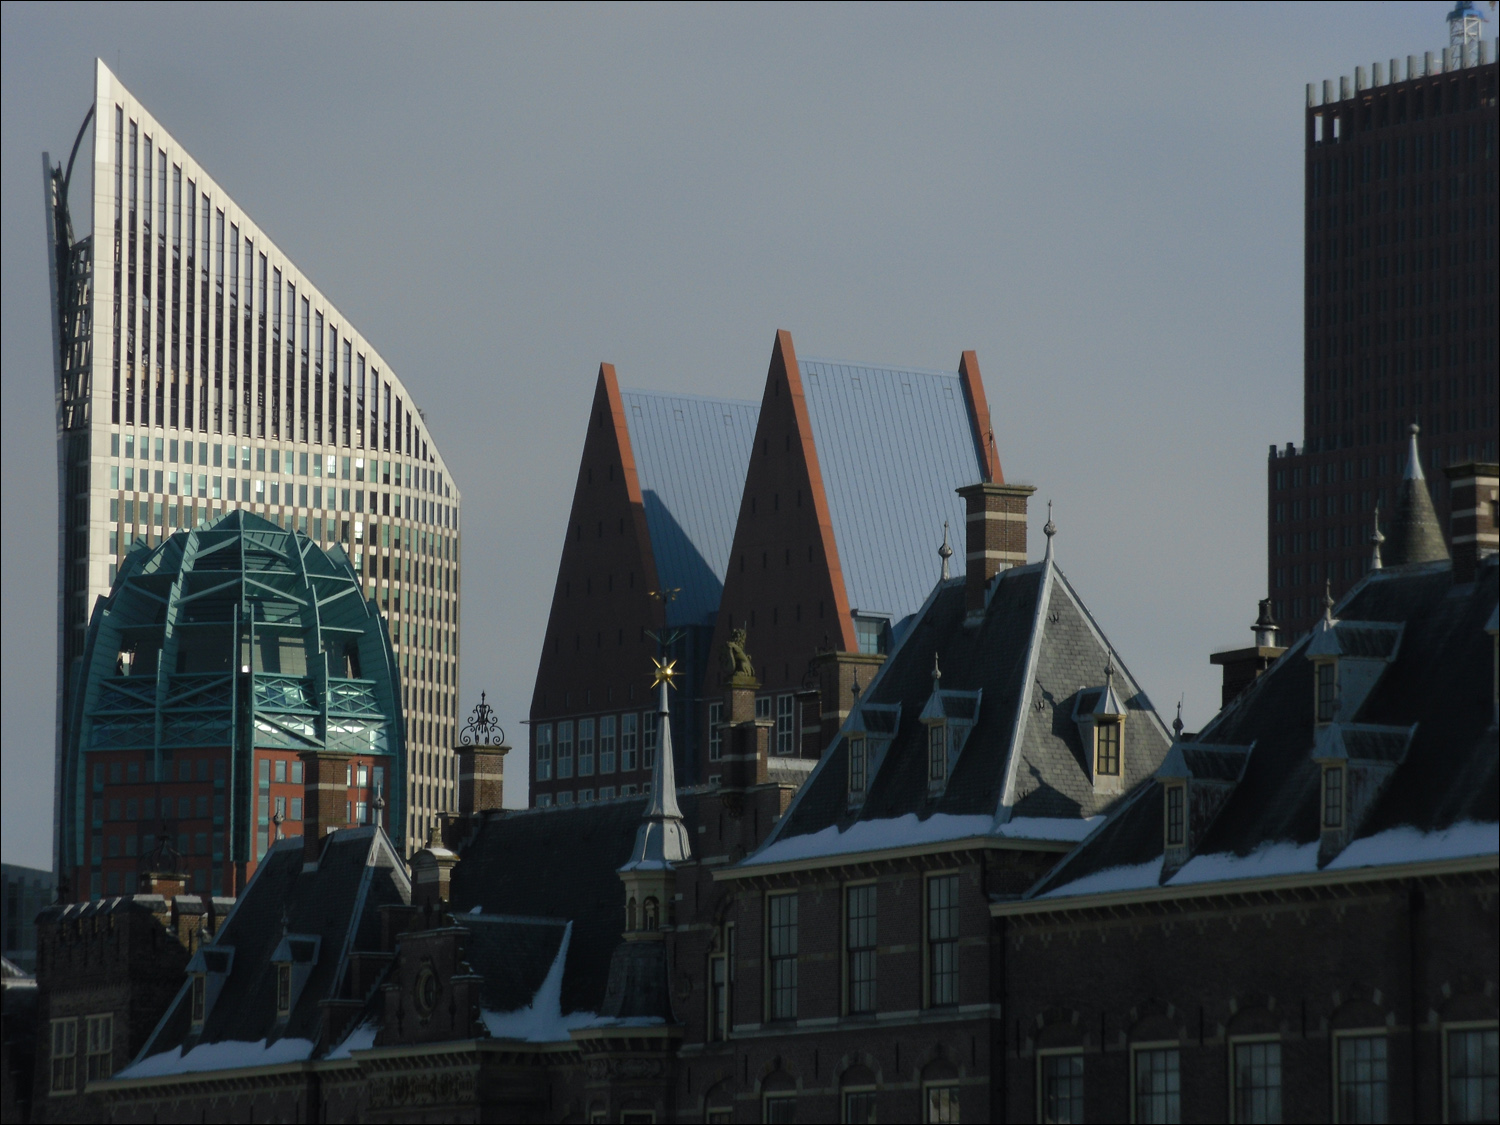 Hague-Binnenhof roofline in front of modern skyline